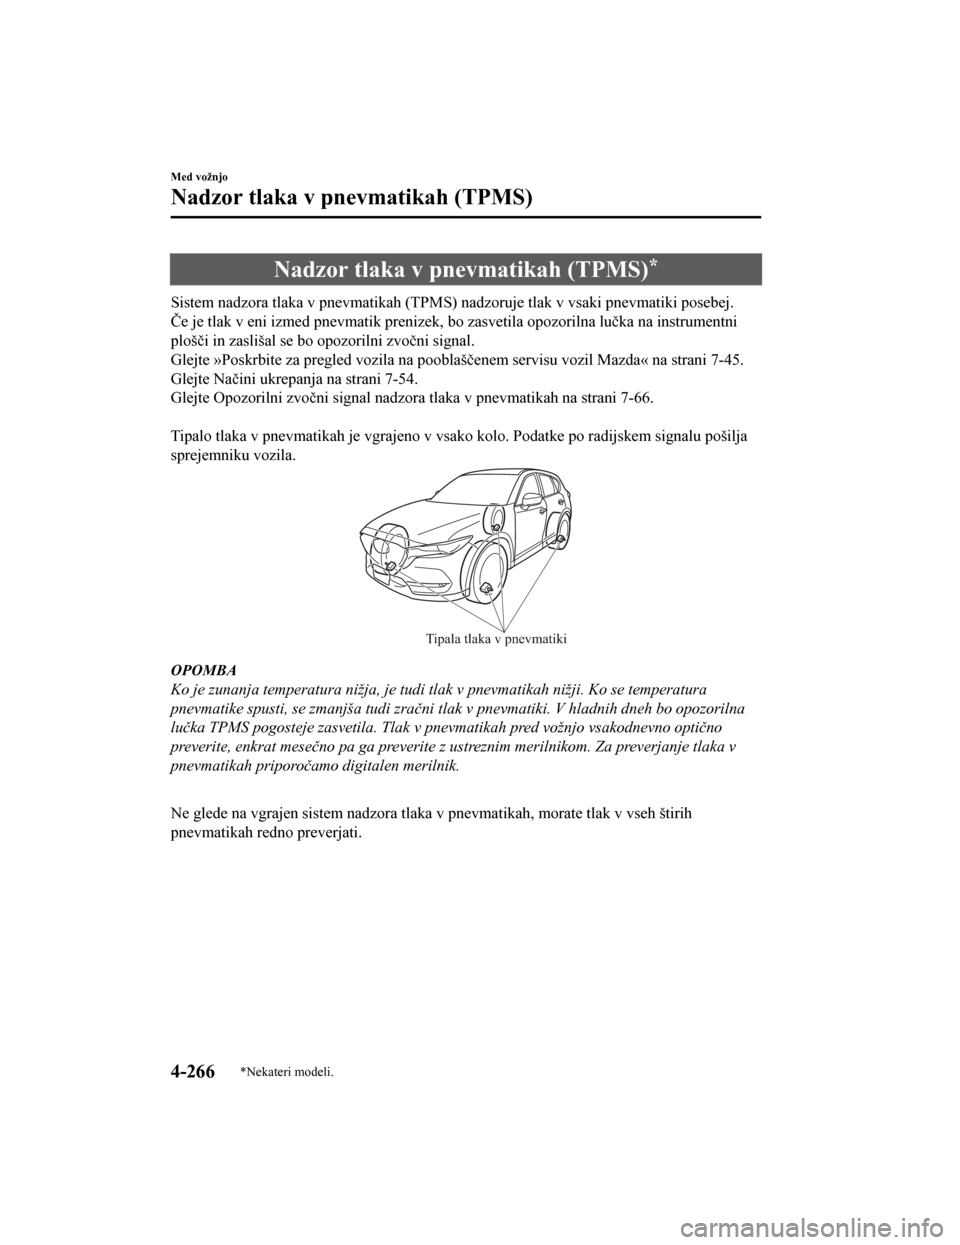 MAZDA MODEL CX-5 2019  Priročnik za lastnika (in Slovenian) Nadzor tlaka v pnevmatikah (TPMS)*
Sistem nadzora tlaka v pnevmatikah (TPMS) nadzoruje tlak v vsaki pnevmatiki posebej.
Če je tlak v eni izmed pnevmatik prenizek, bo zasvetila opozorilna lučka na in